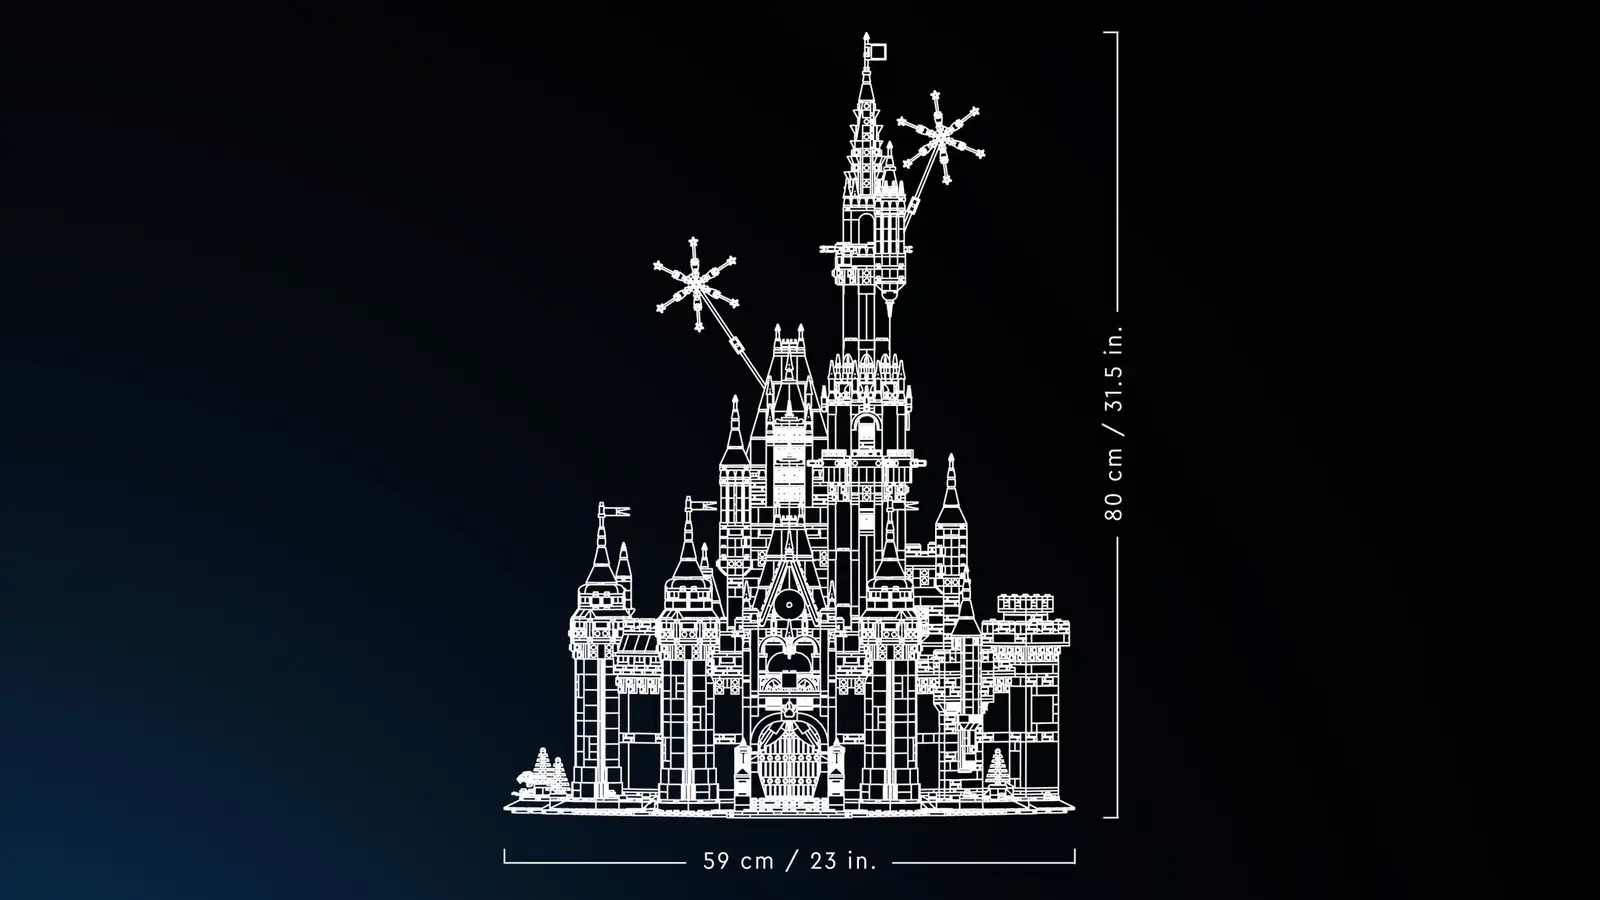 LEGO: in arrivo il nuovo castello Disney - Nerdgames